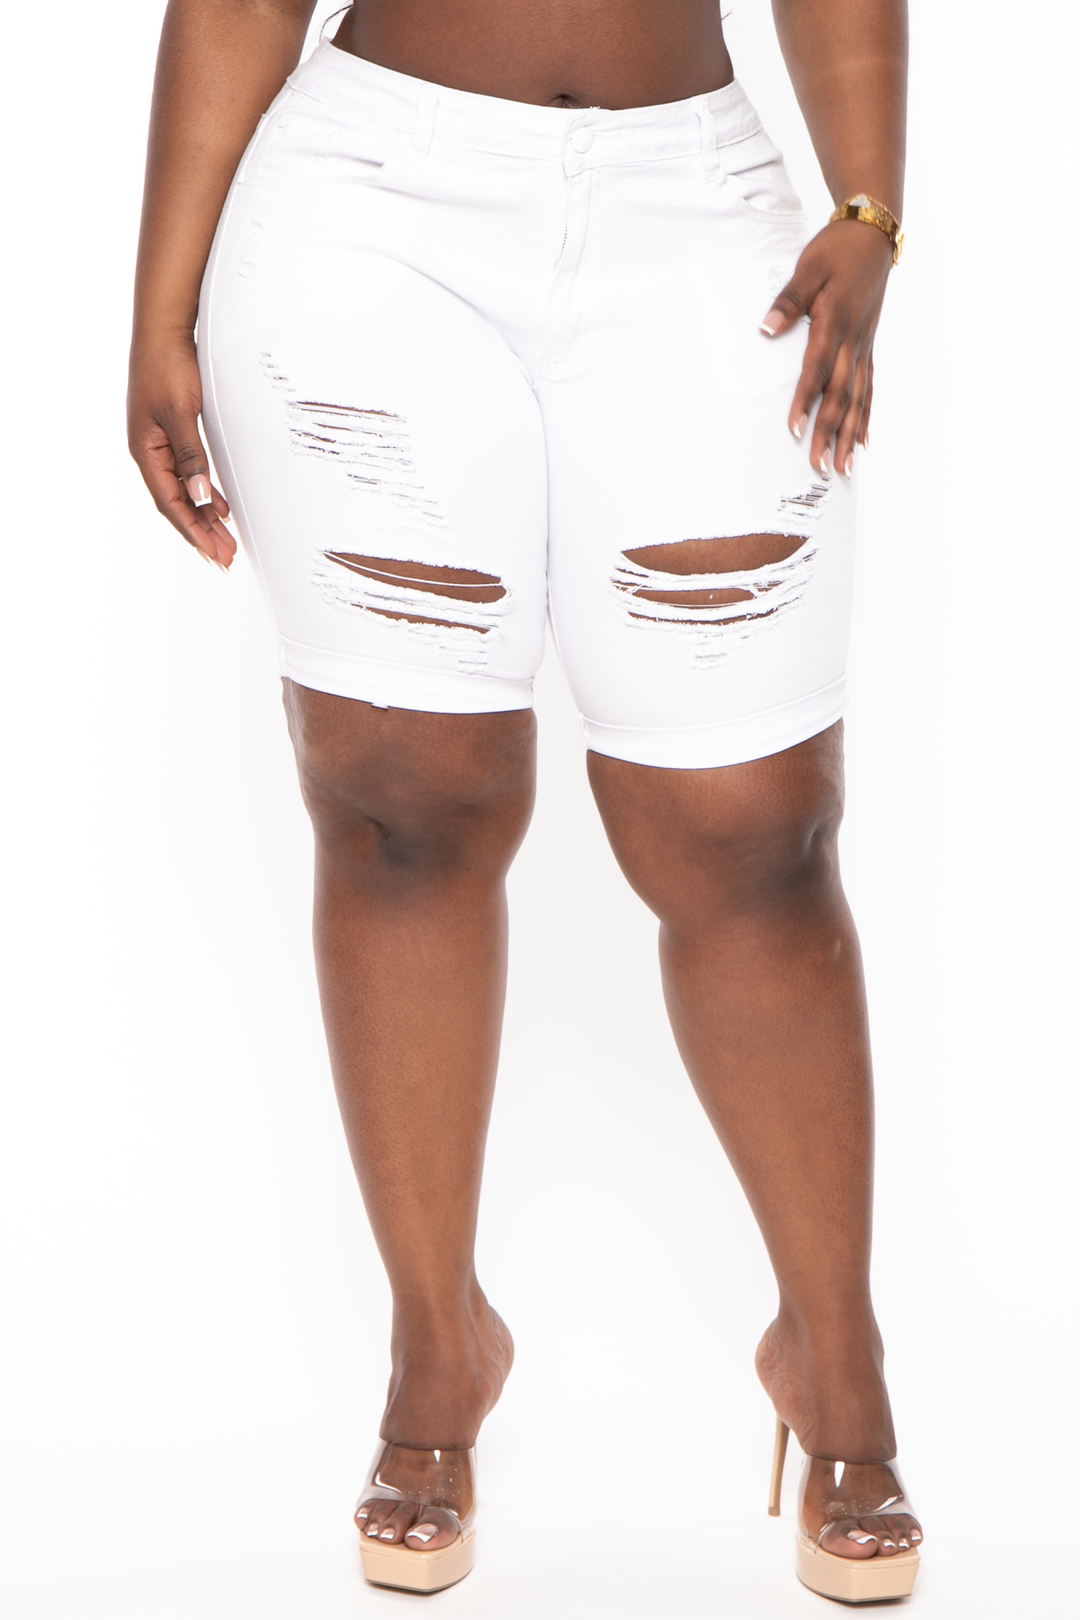 Wax Jean Jeans 14 / White Plus Size Distressed Bermuda Jean Shorts - White